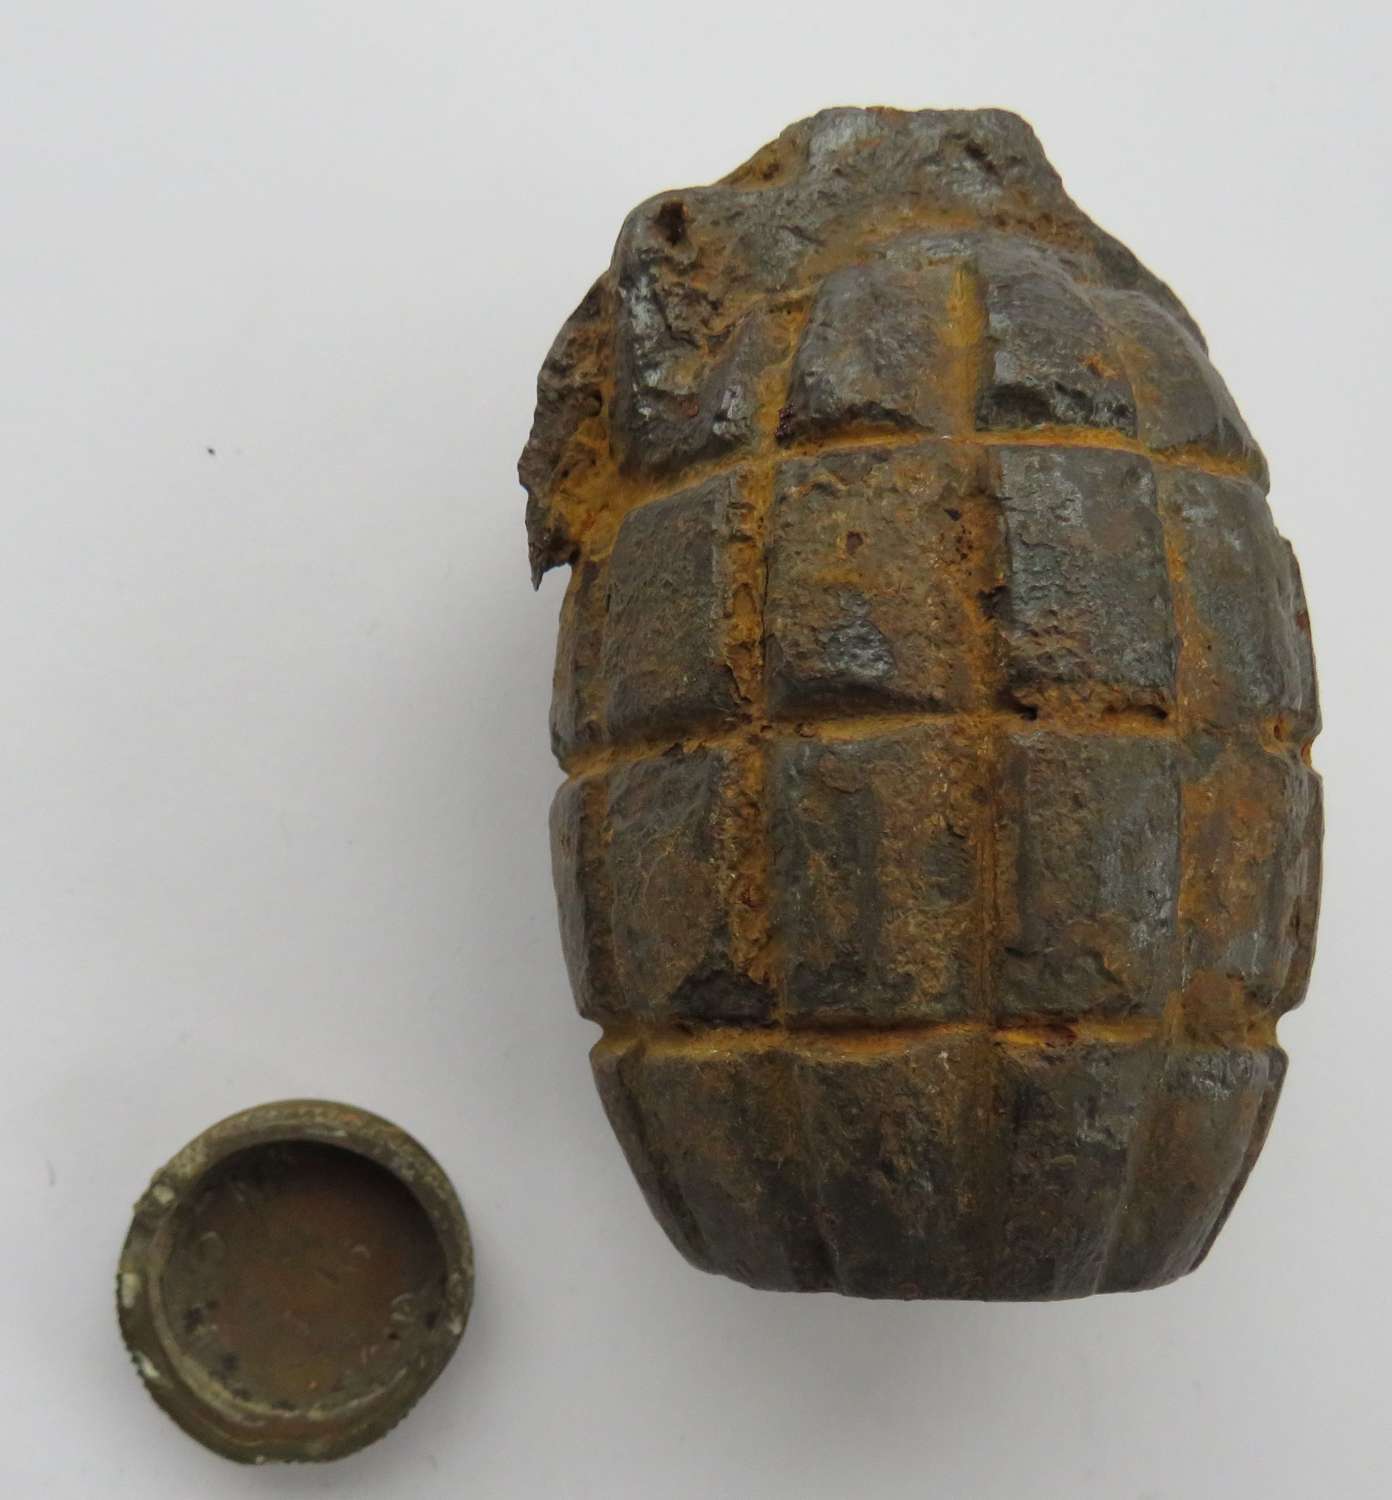 WW 1 Inert Excavated Mills Grenade